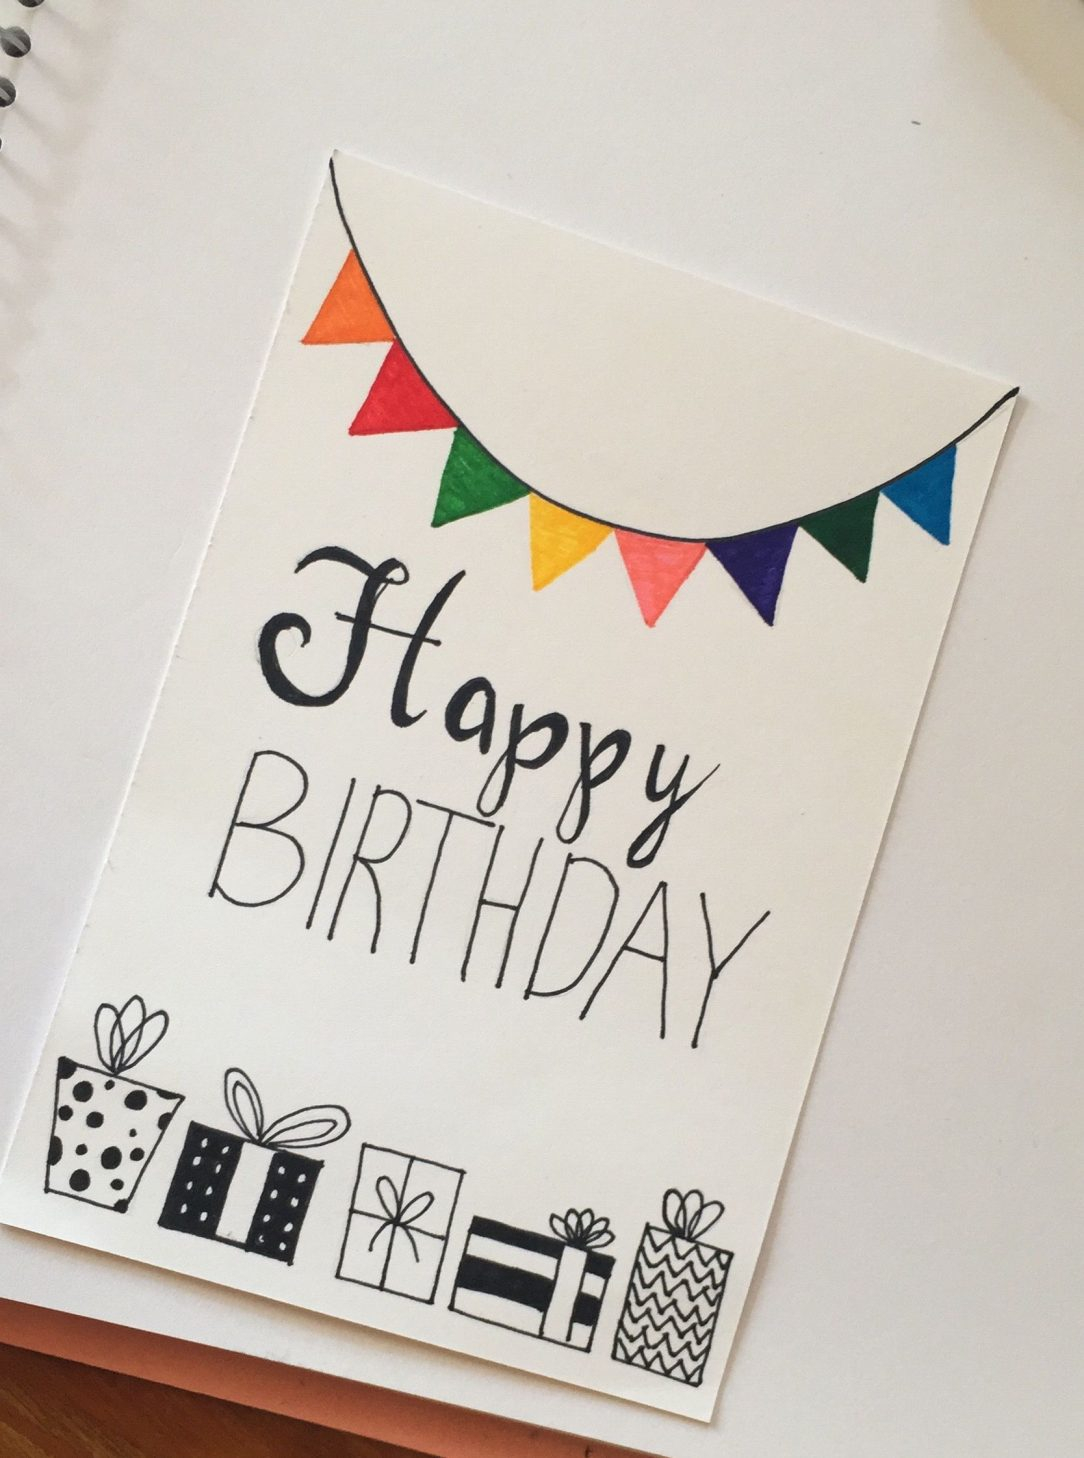 Birthday Card For Girlfriend Ideas Cute Bff Birthday Card Ideas Little Girl Envelopes For Him Handmade